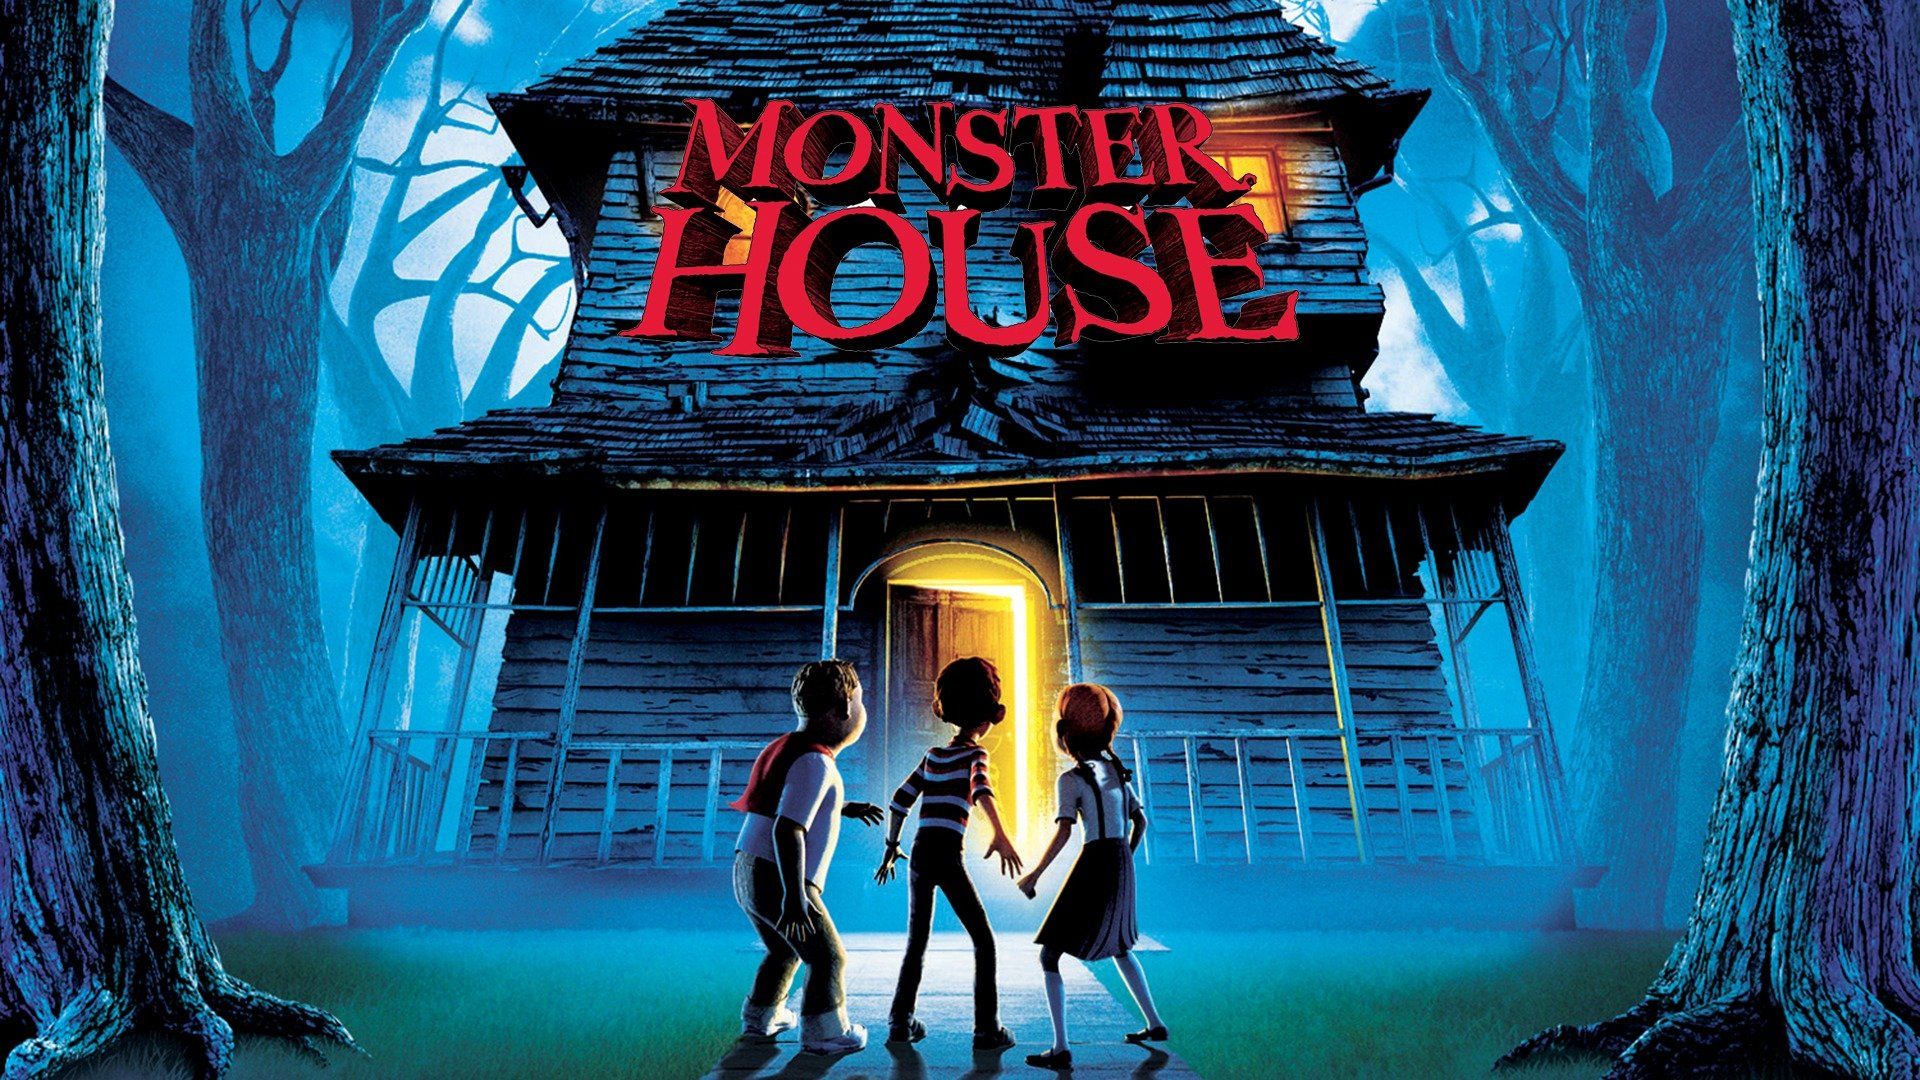 Watch Monster House (2006) Full Movie Online - Plex